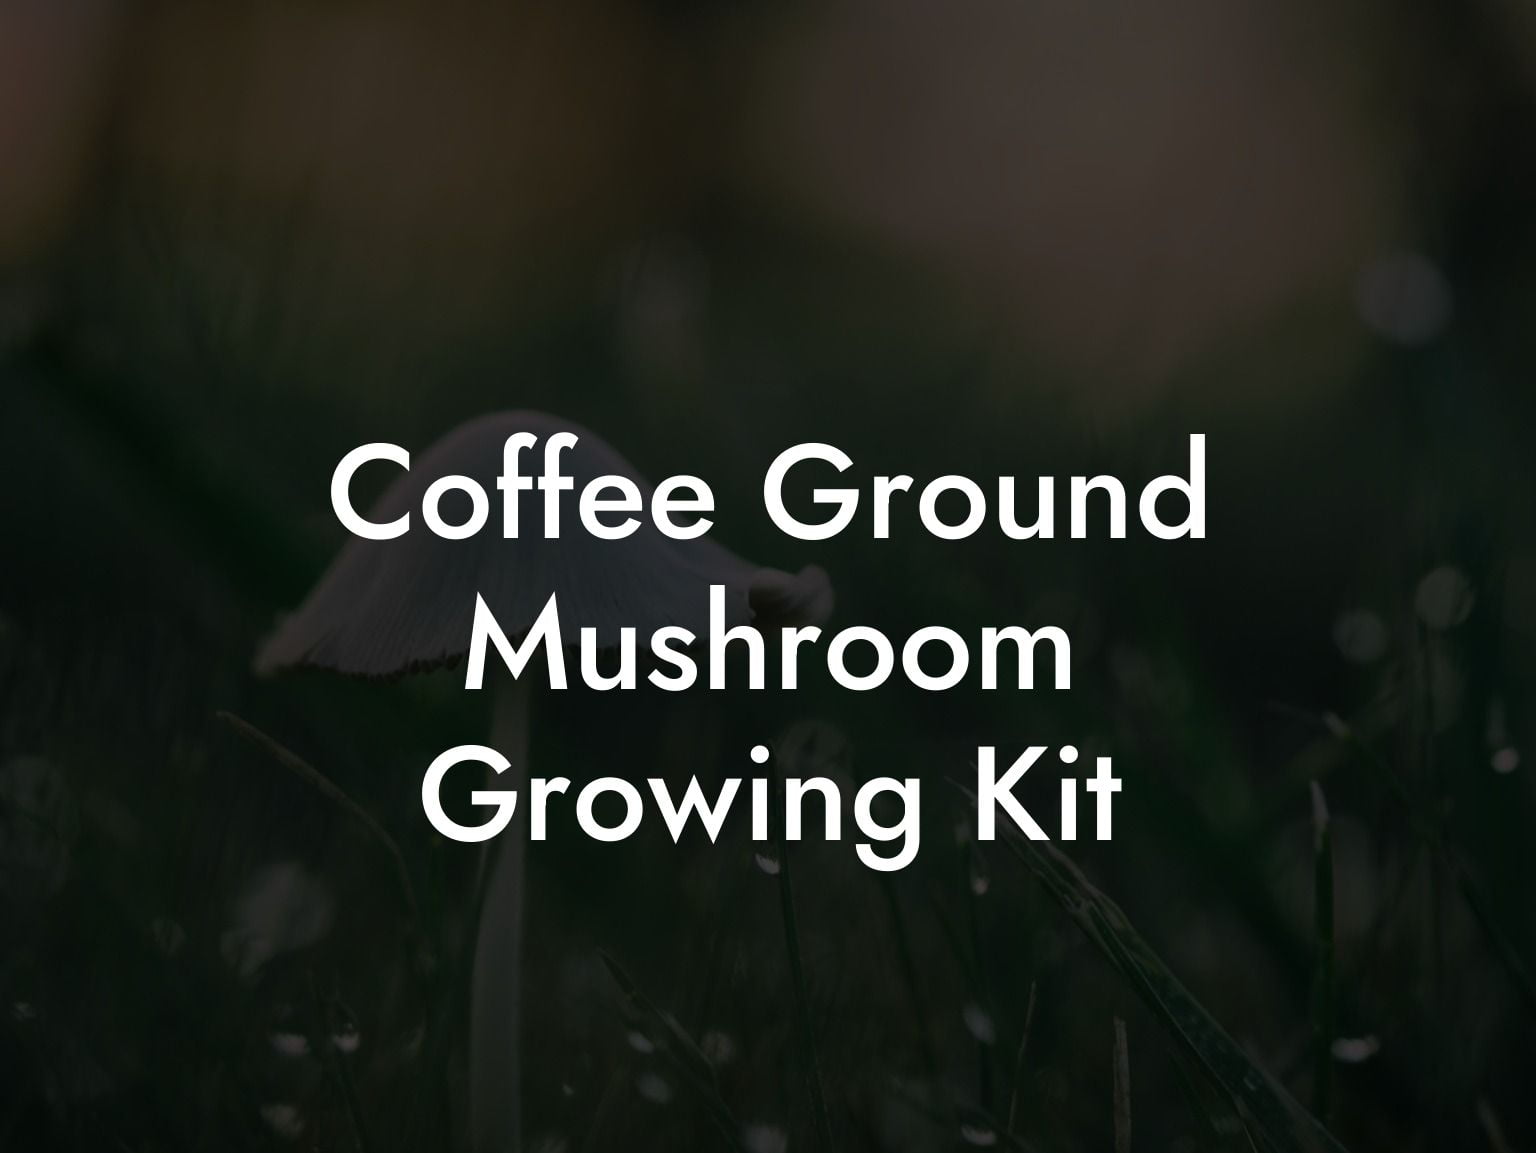 Coffee Ground Mushroom Growing Kit